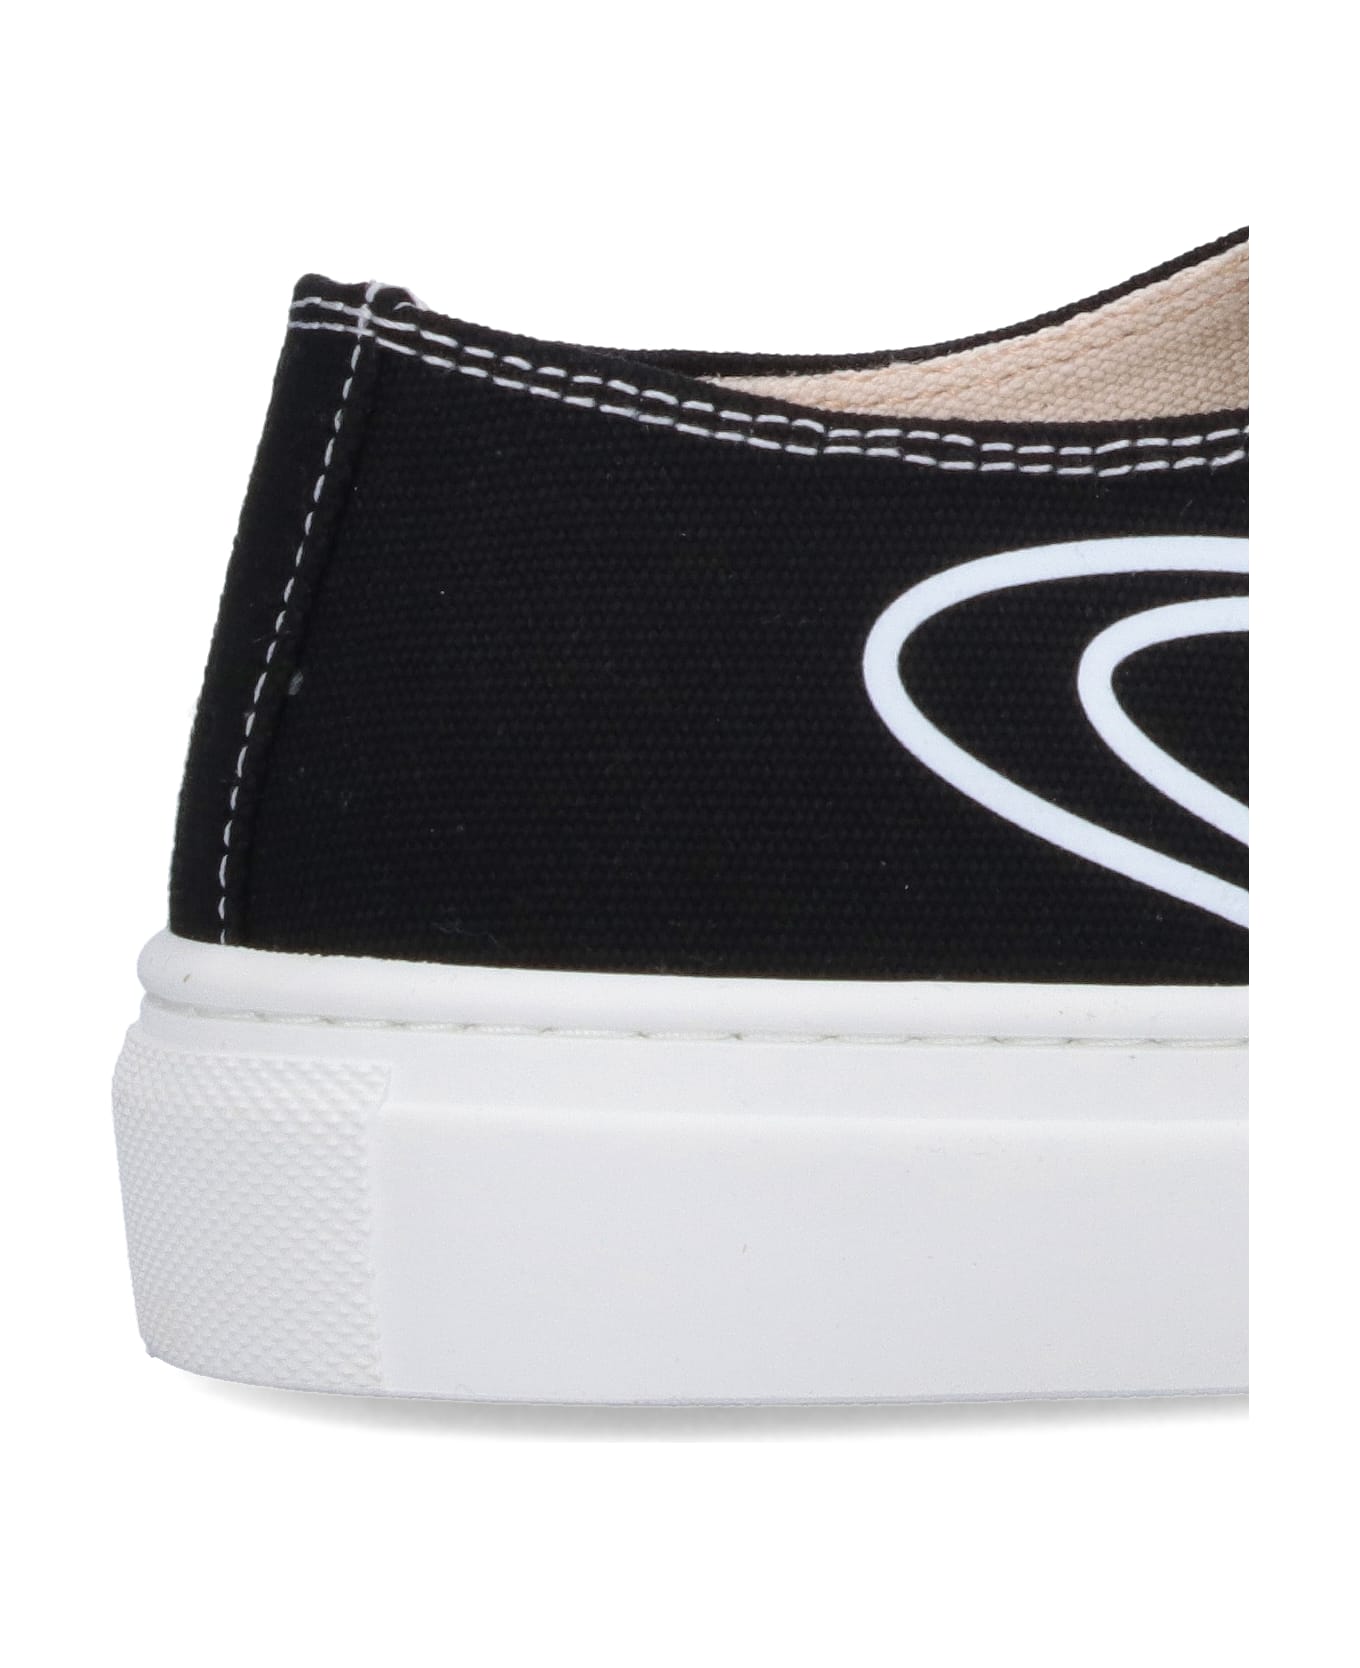 Vivienne Westwood 'plimsoll' Low Top Sneakers - Black   スニーカー